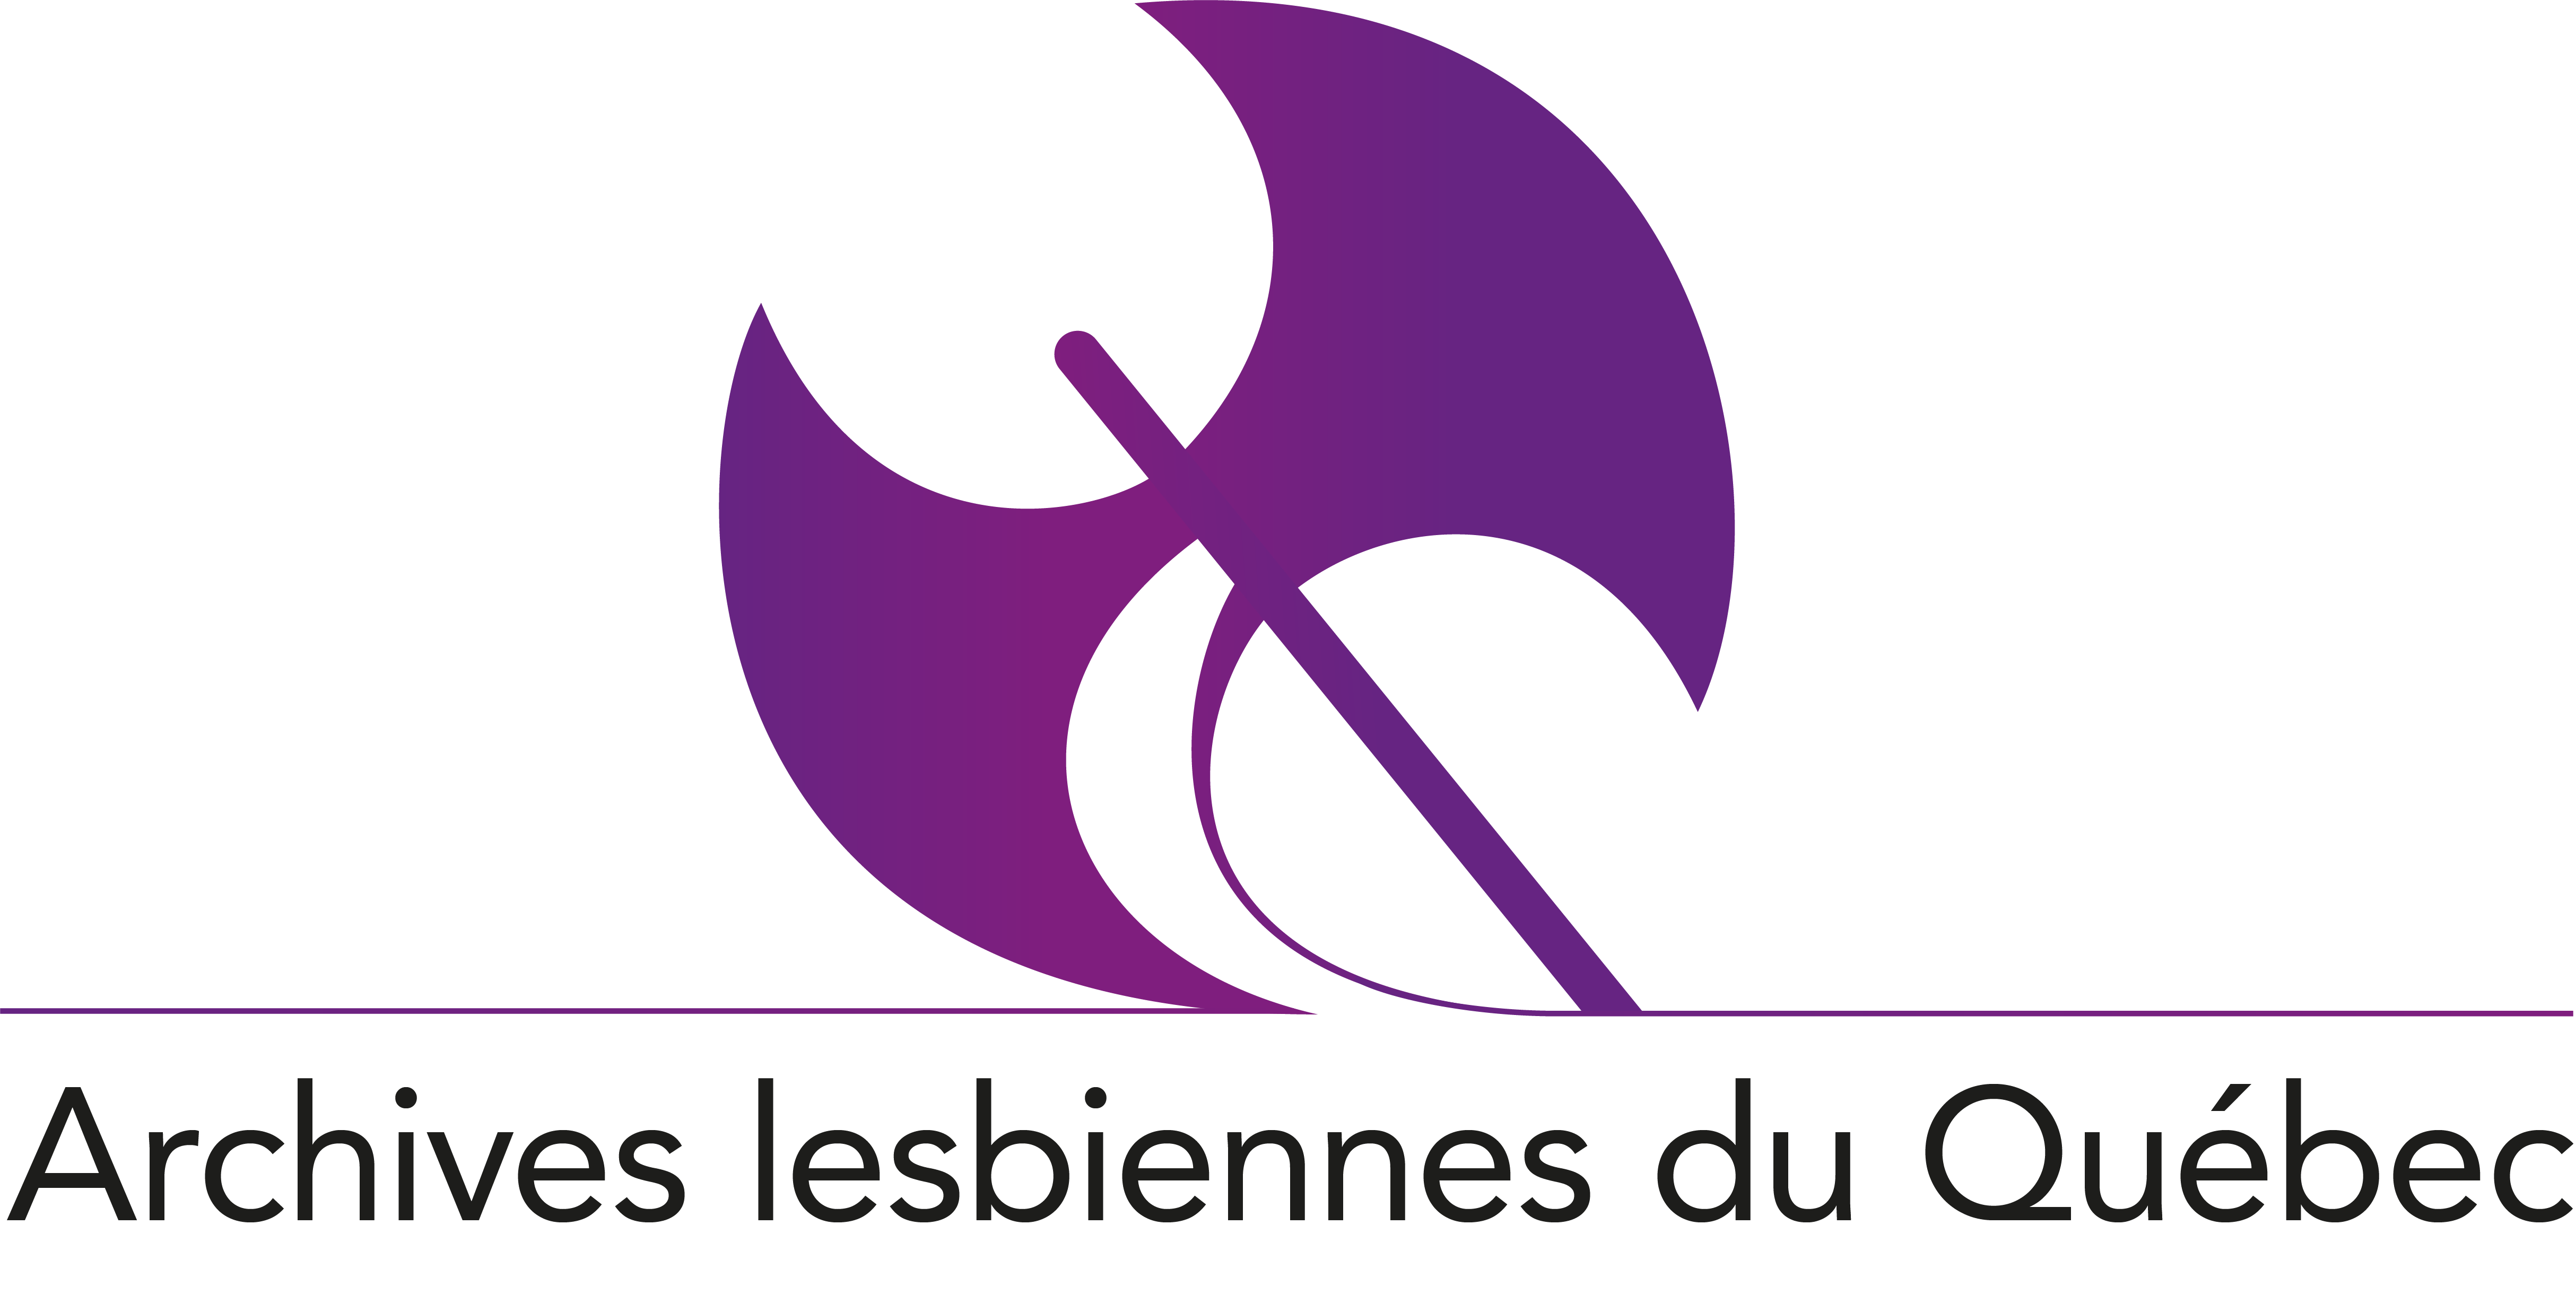 Archives lesbiennes du Québec